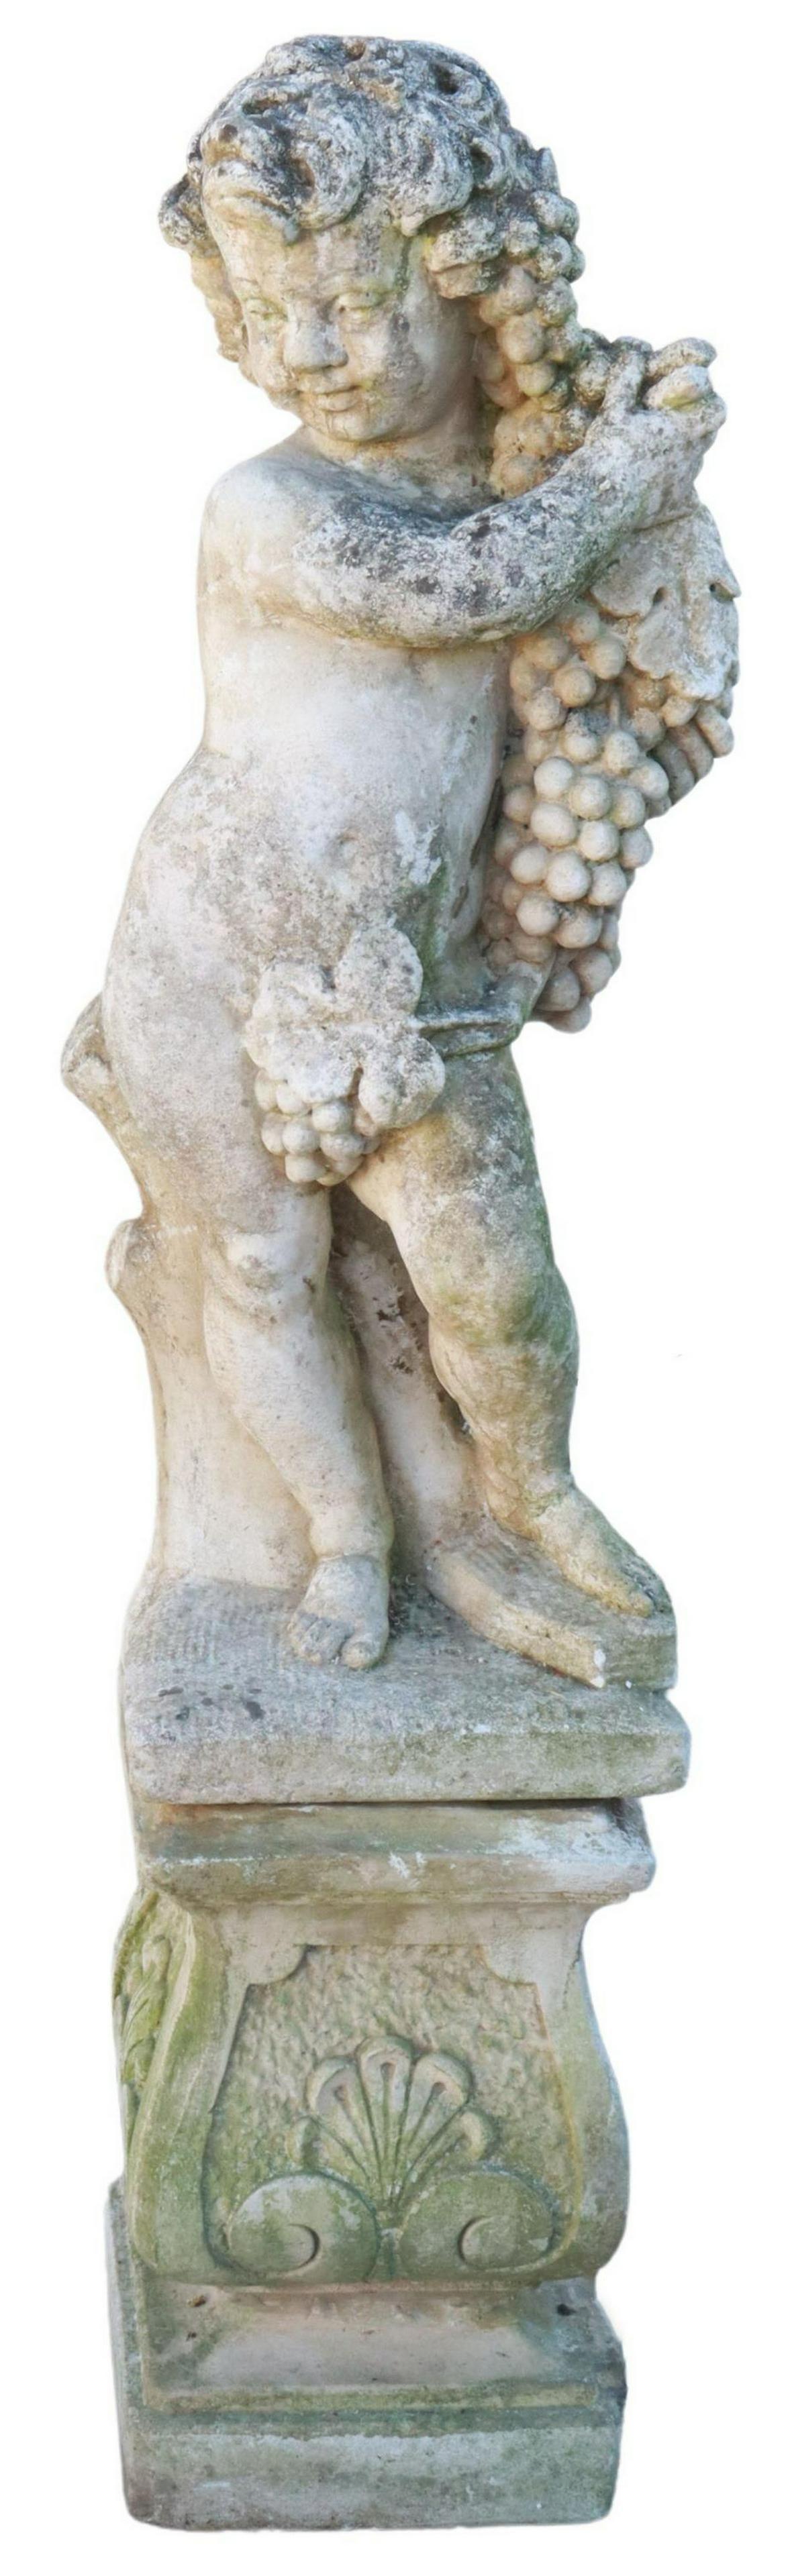 Französische Gartenskulptur aus Steinguss, Putto mit Weinreben, auf separatem Sockel stehend, mit Muschelmotiv.

Abmessungen
ca. 54 